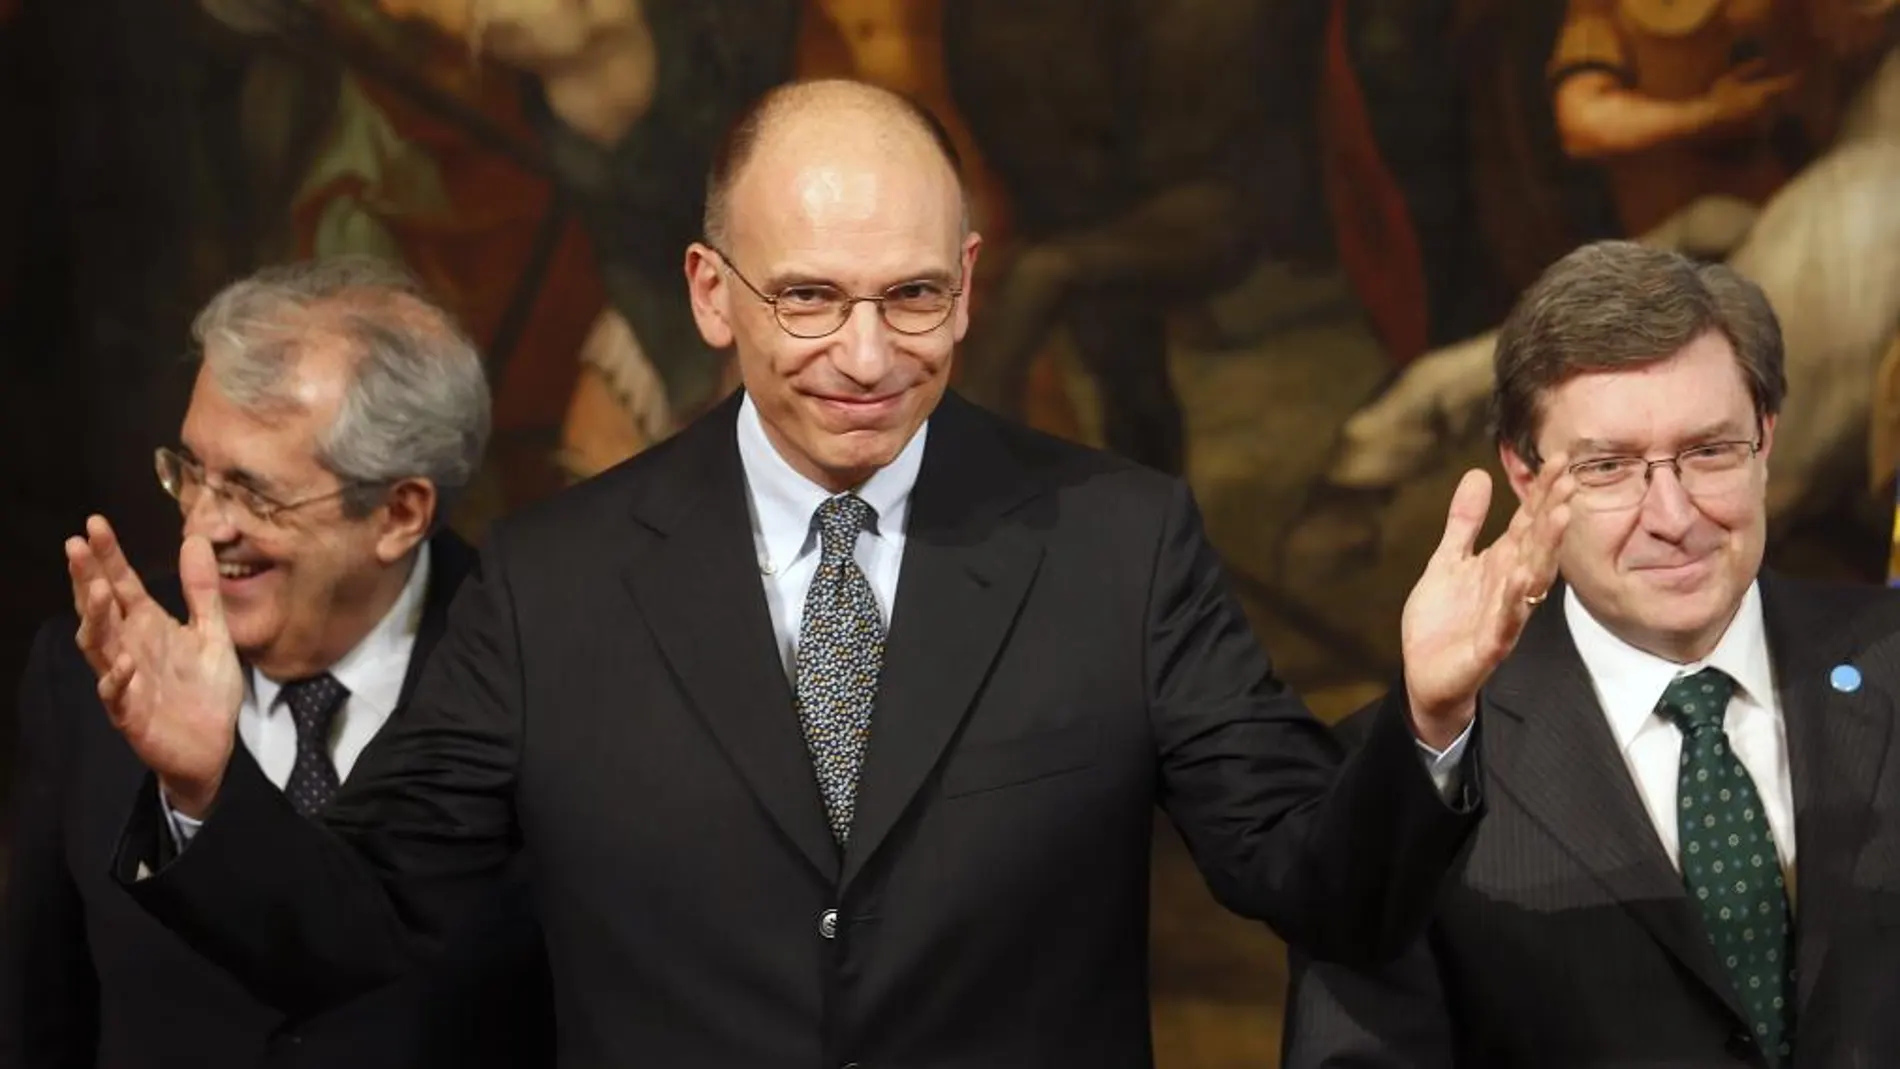 El Primer Ministro italiano Enrico Letta (C) el ministro de economía Fabrizio Saccomanni (L) y el ministro de trabajo Enrico Giovannini, hoy 14 de junio de 2013.